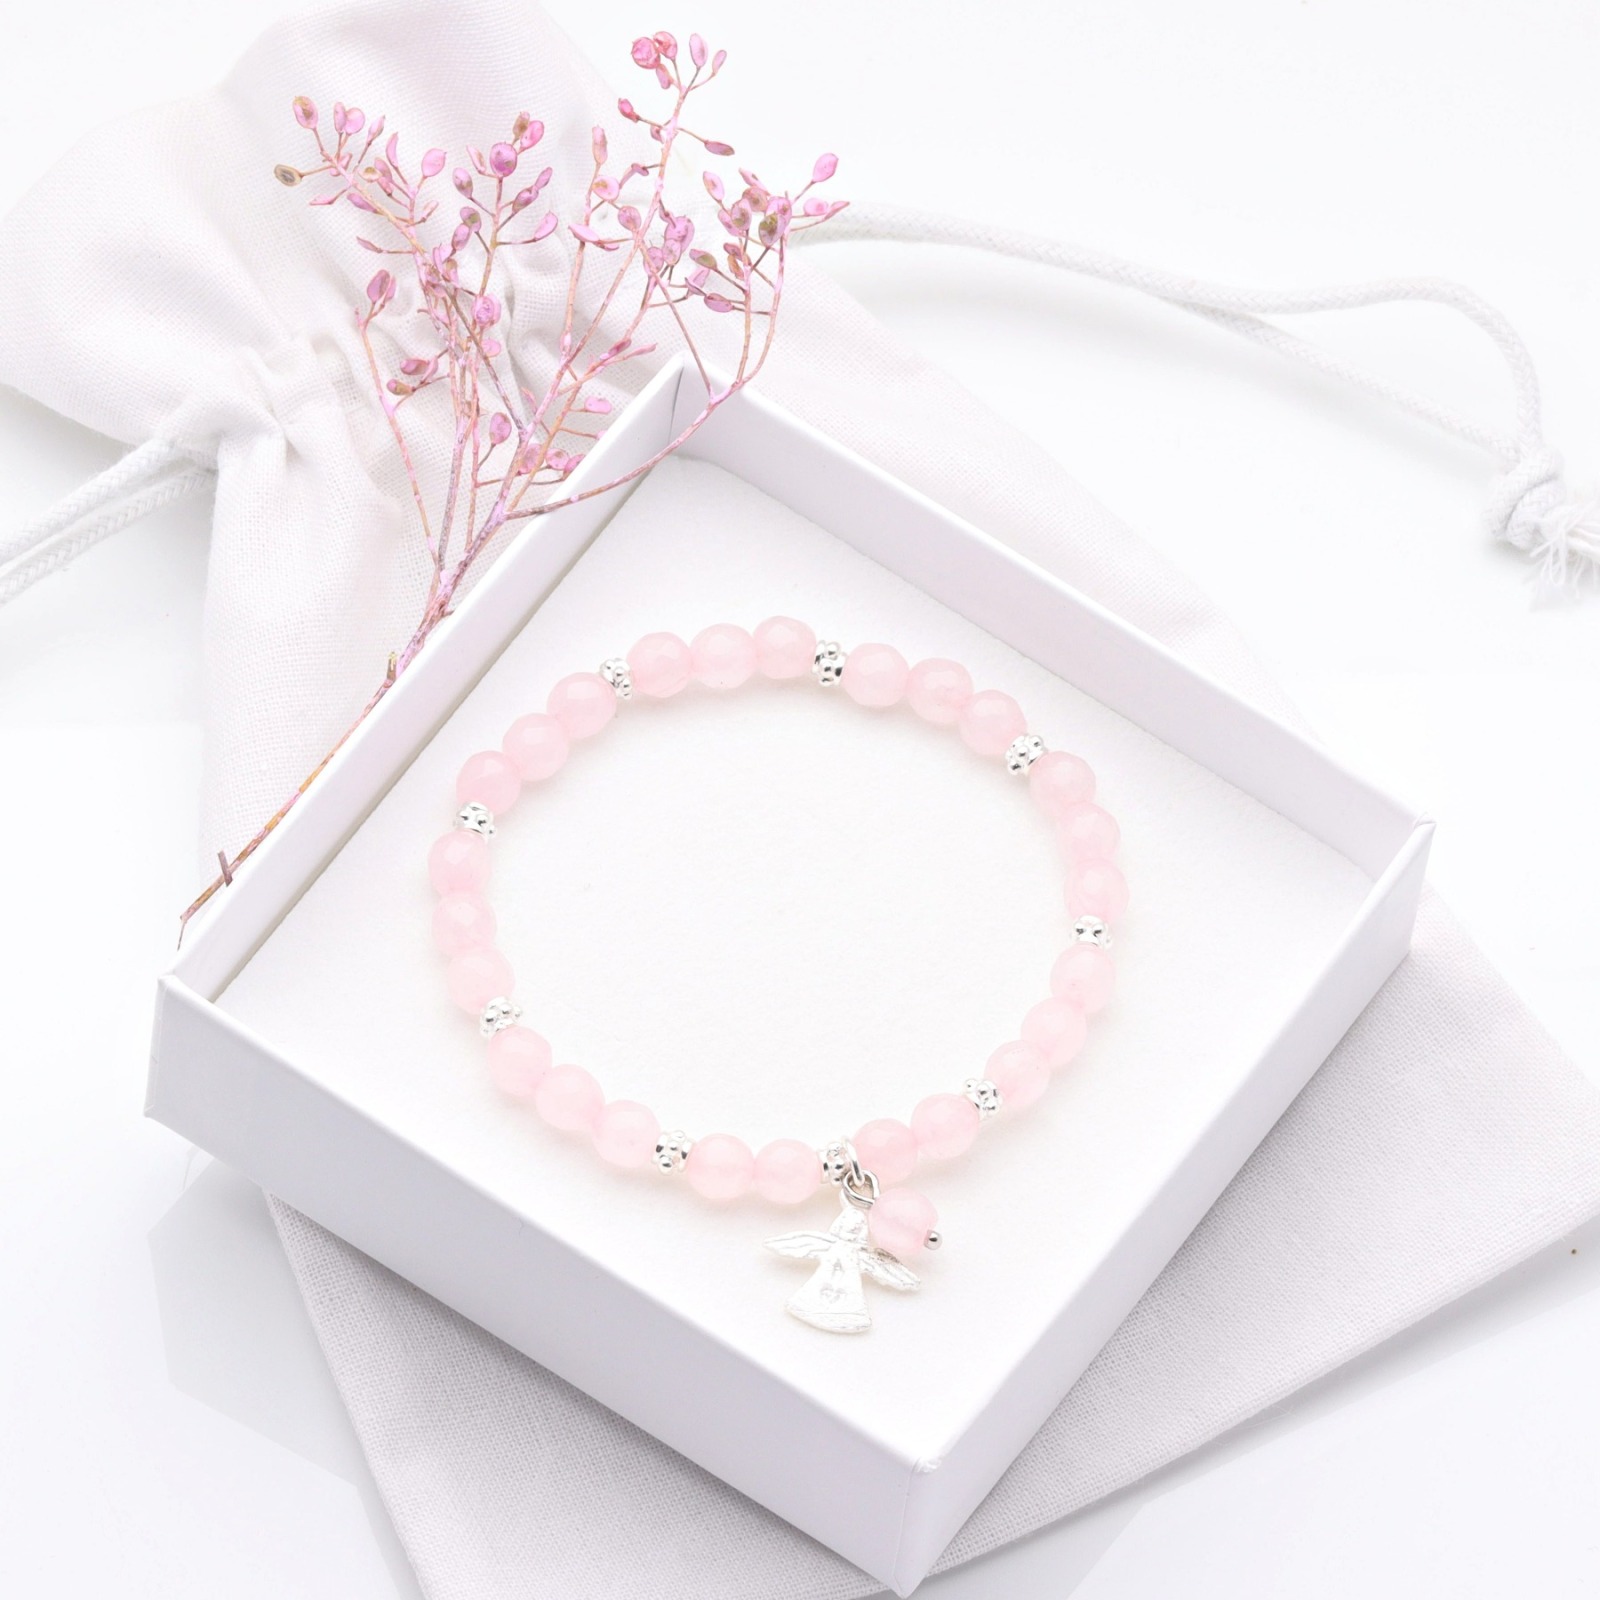 Rosenquarz-Armband Damen mit Schutzengel Silber, perfektes Geschenk für Frauen und Mädchen,